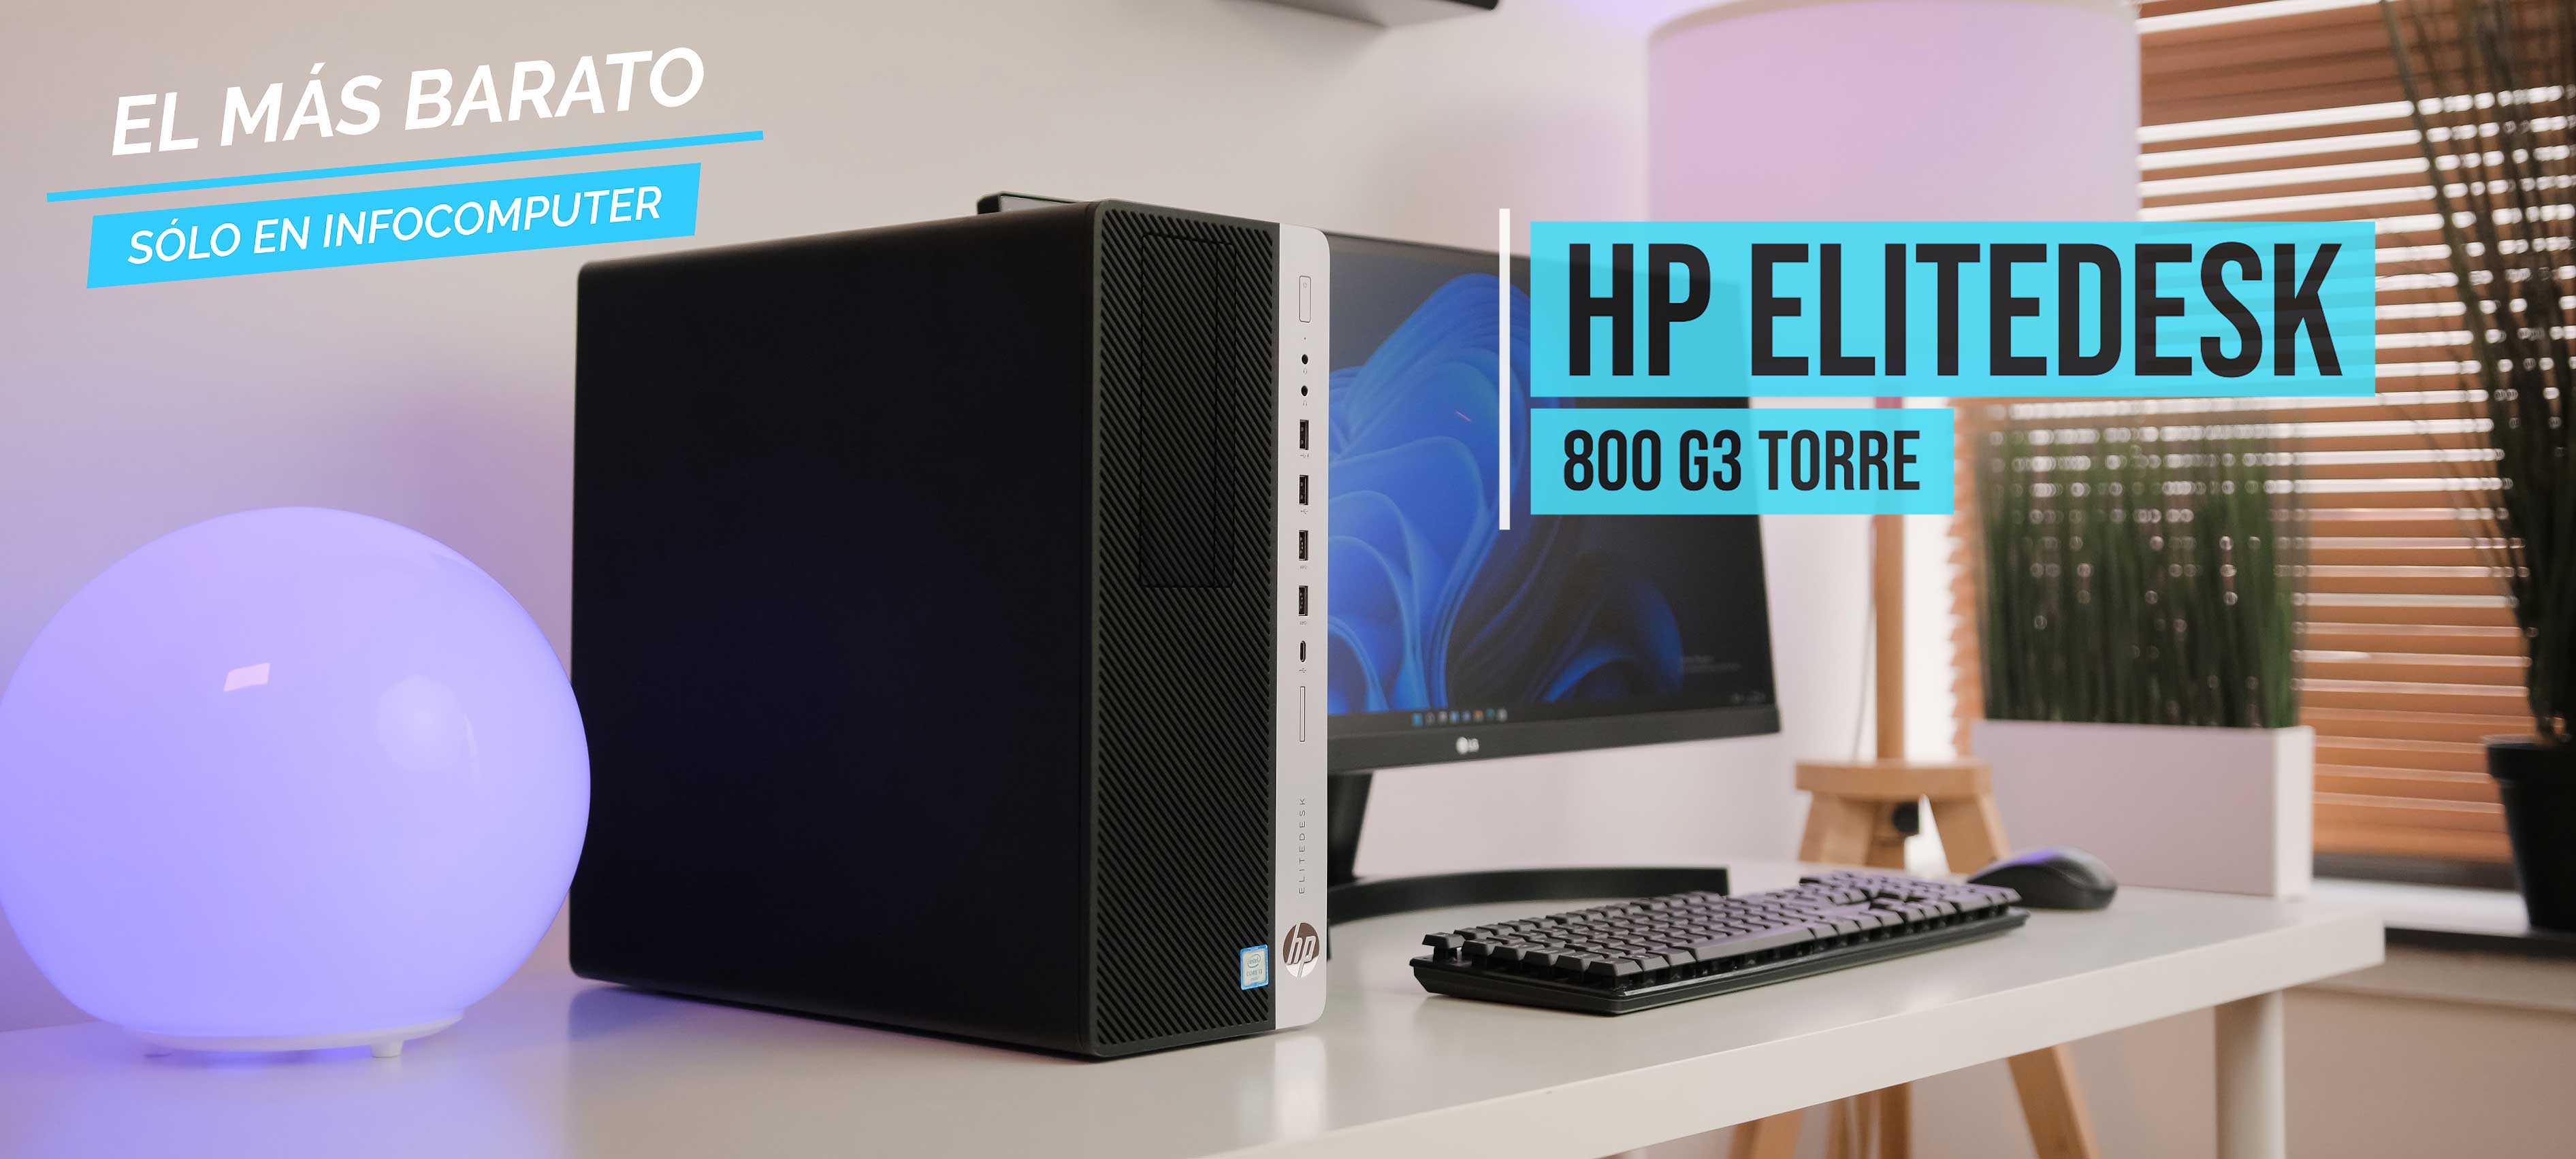 HP EliteDesk 800 G3 Torre | Ordenador de sobremesa barato